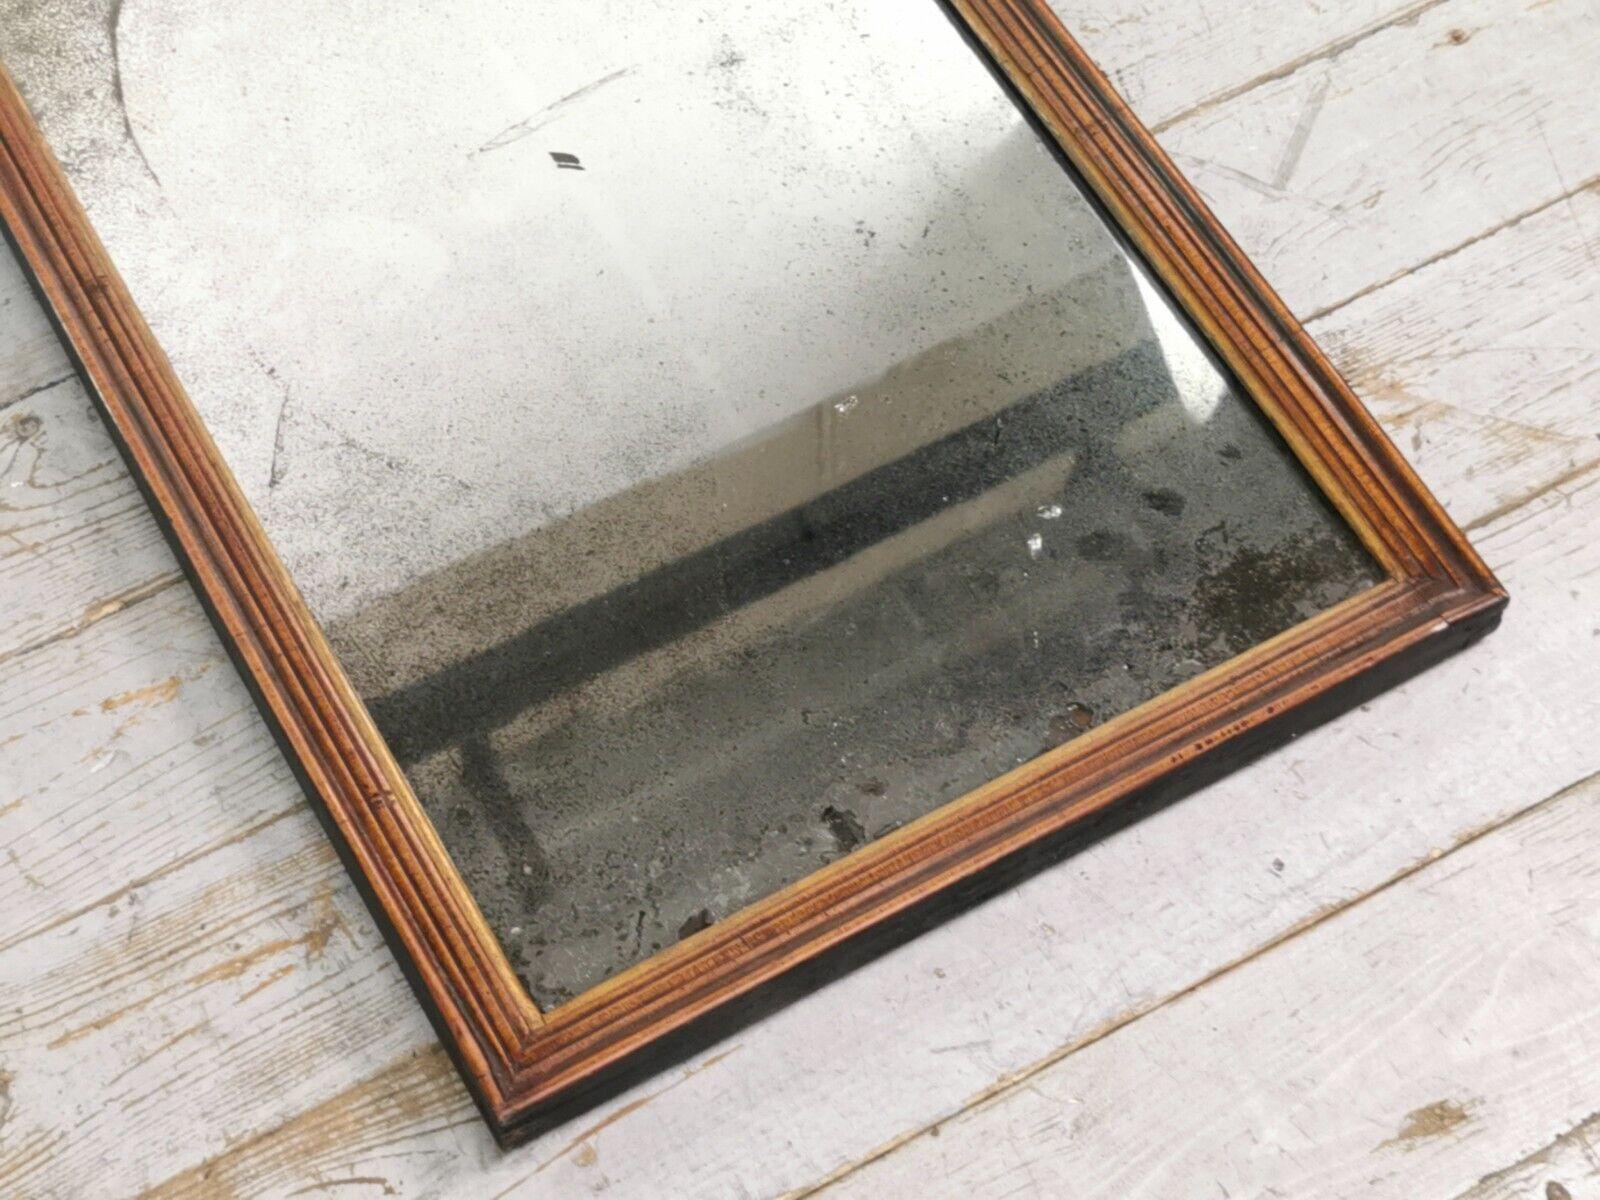 Spätes 19. Jahrhundert Antike Distressed Rechteckige Wand Spiegel

Ein rechteckiger Wandspiegel aus dem späten 19. Jahrhundert mit wunderschön gealterter Platte und tief getöntem, charaktervollem Mahagoni-Rahmen.

Abmessungen (cm): 

73 H x 45 B x 3